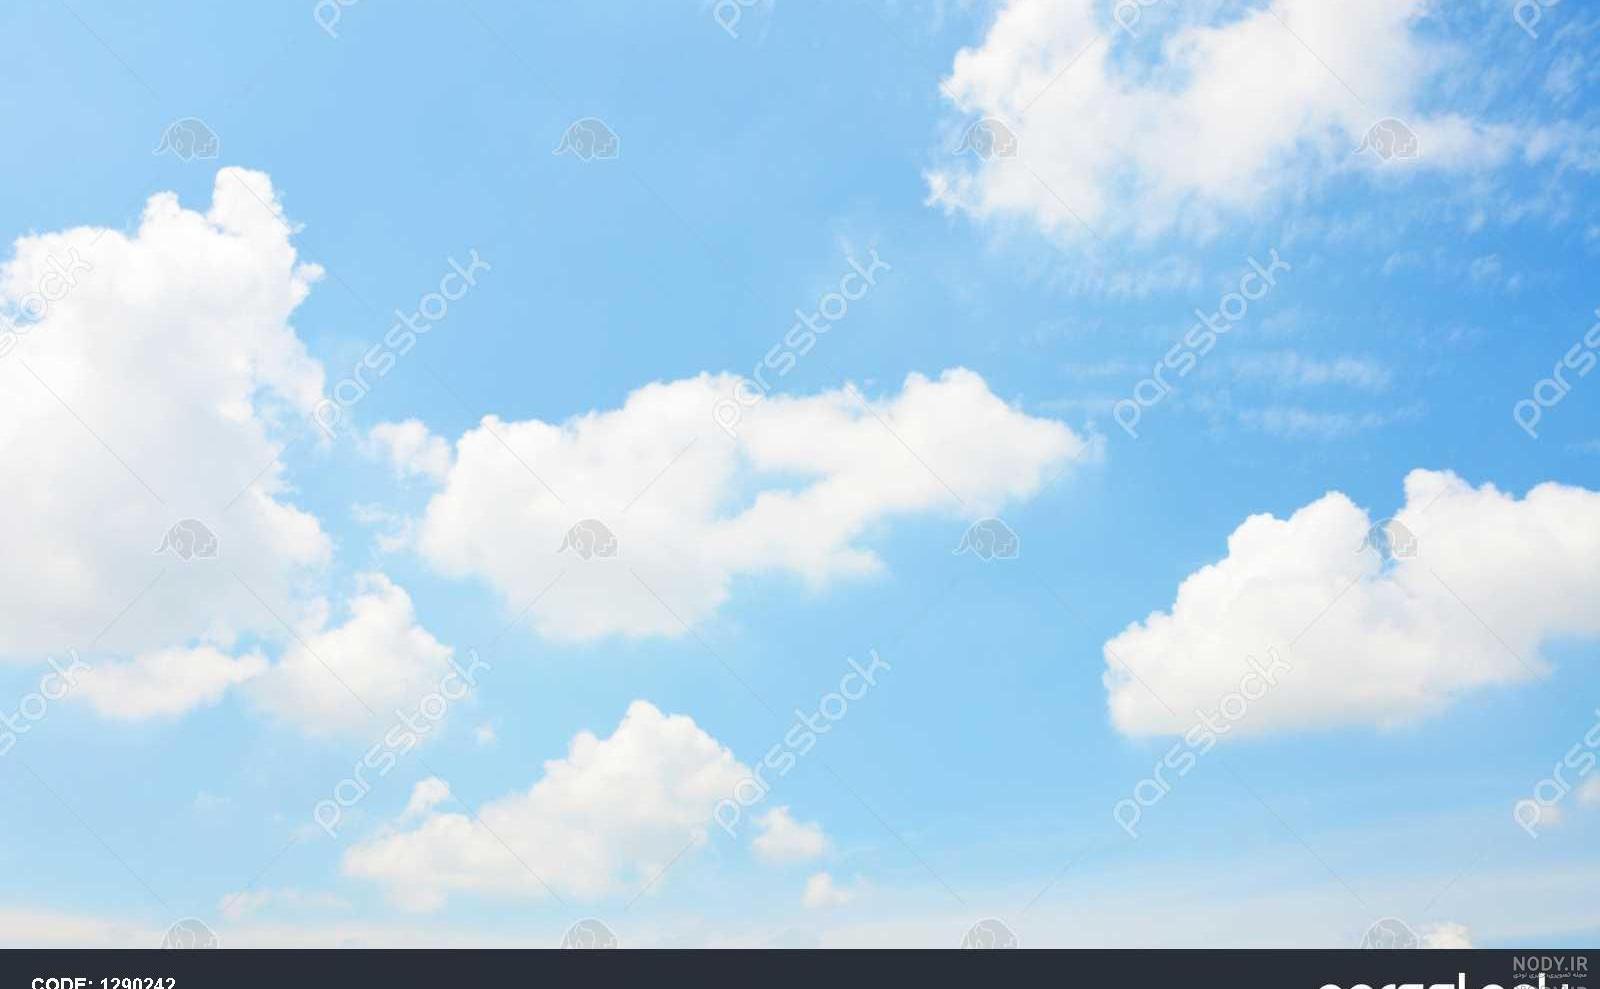 دانلود عکس آسمان برای فتوشاپ